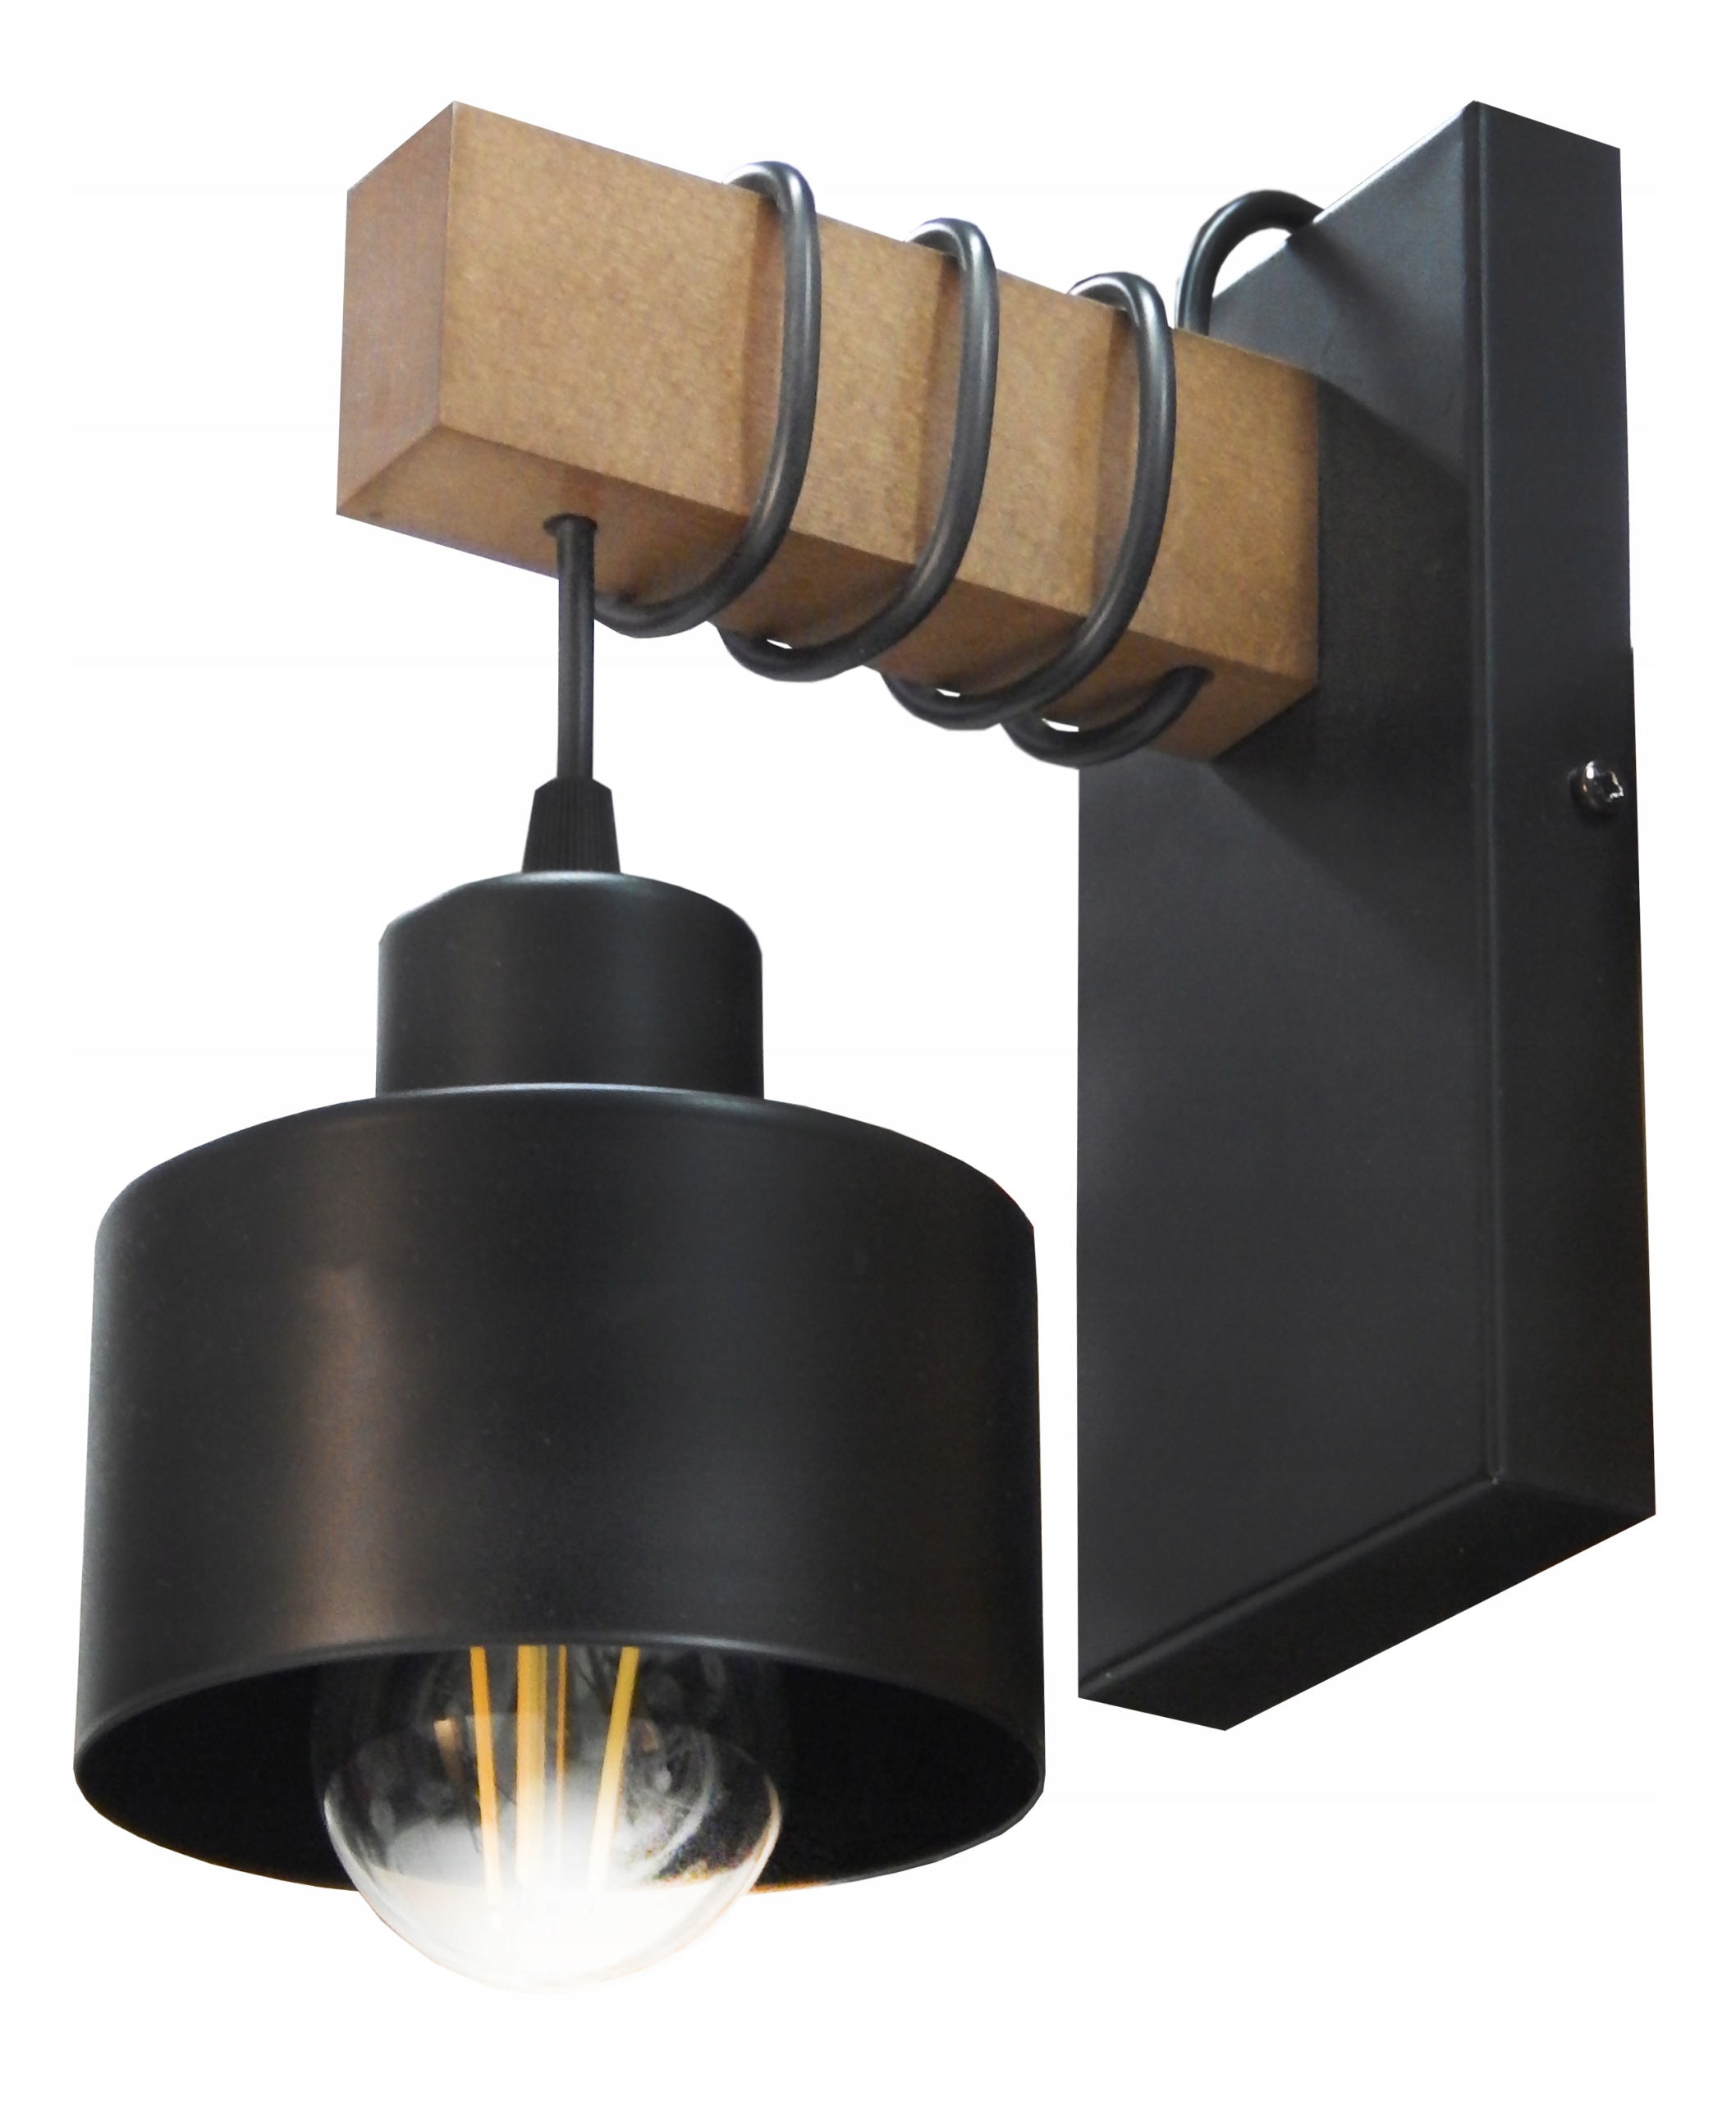 

Lampa/kinkiet Ścienny typ:018-K ,drewno,loft.. W..